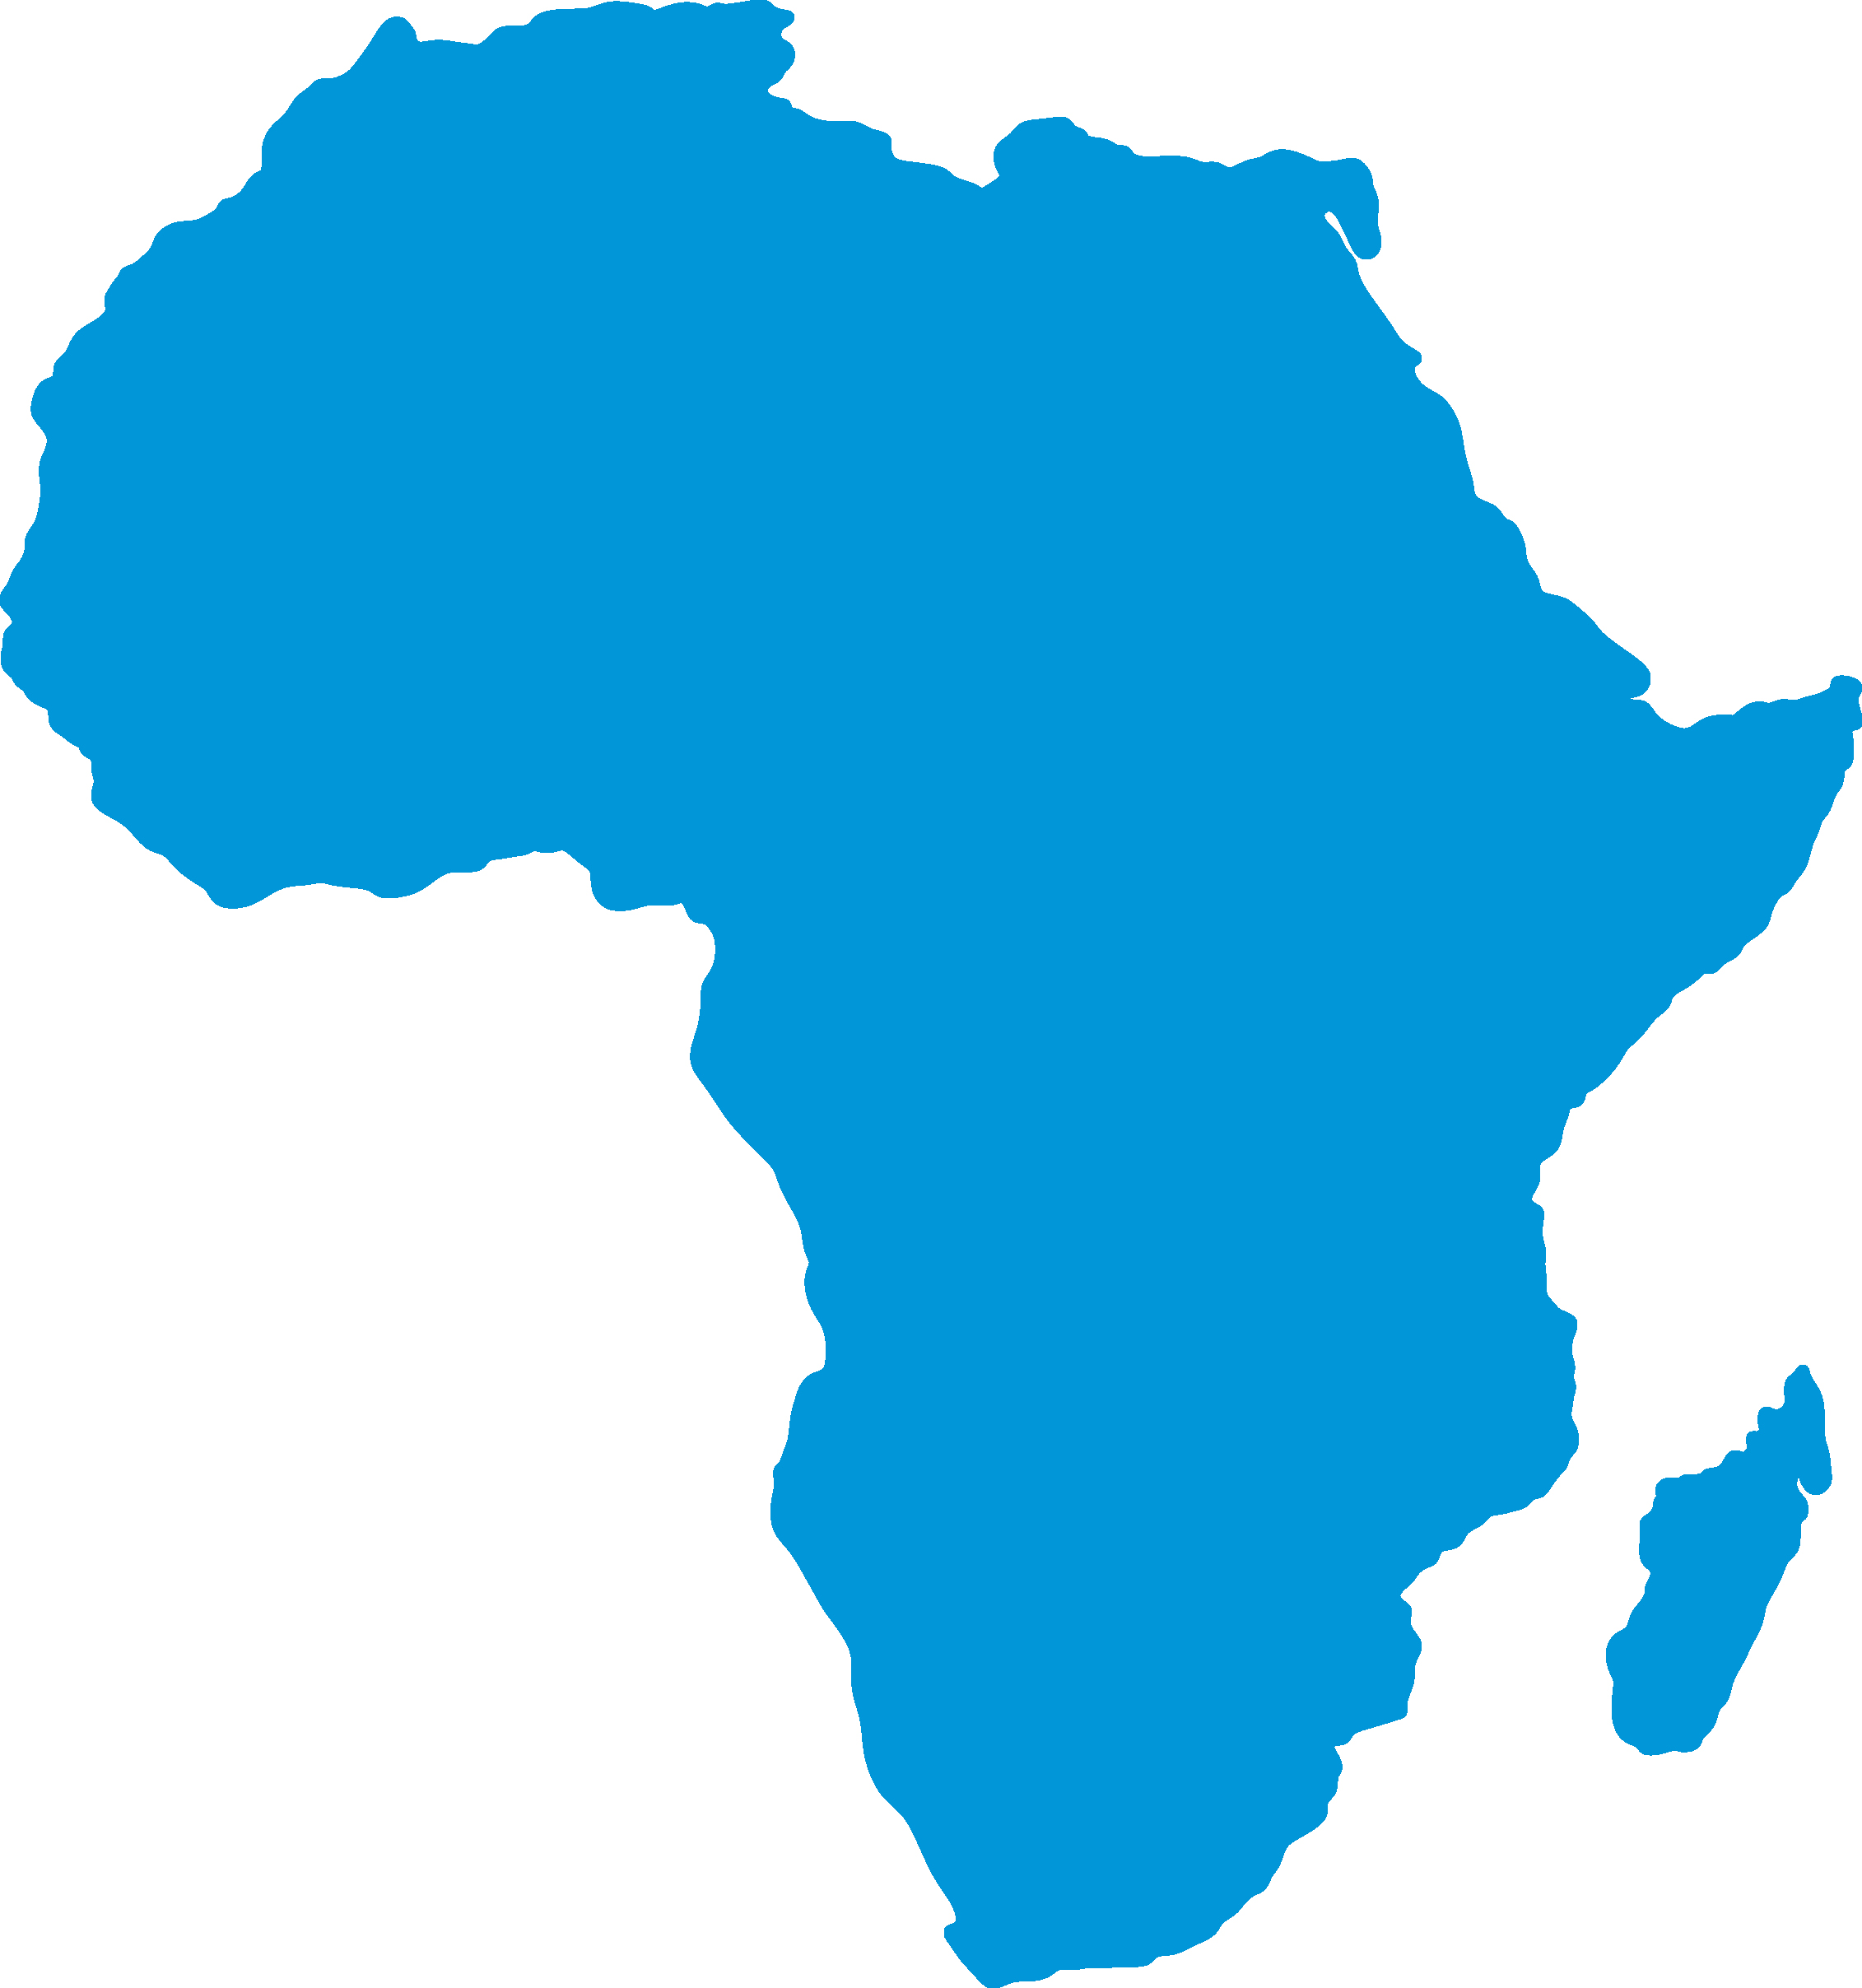 Африка очертания материка